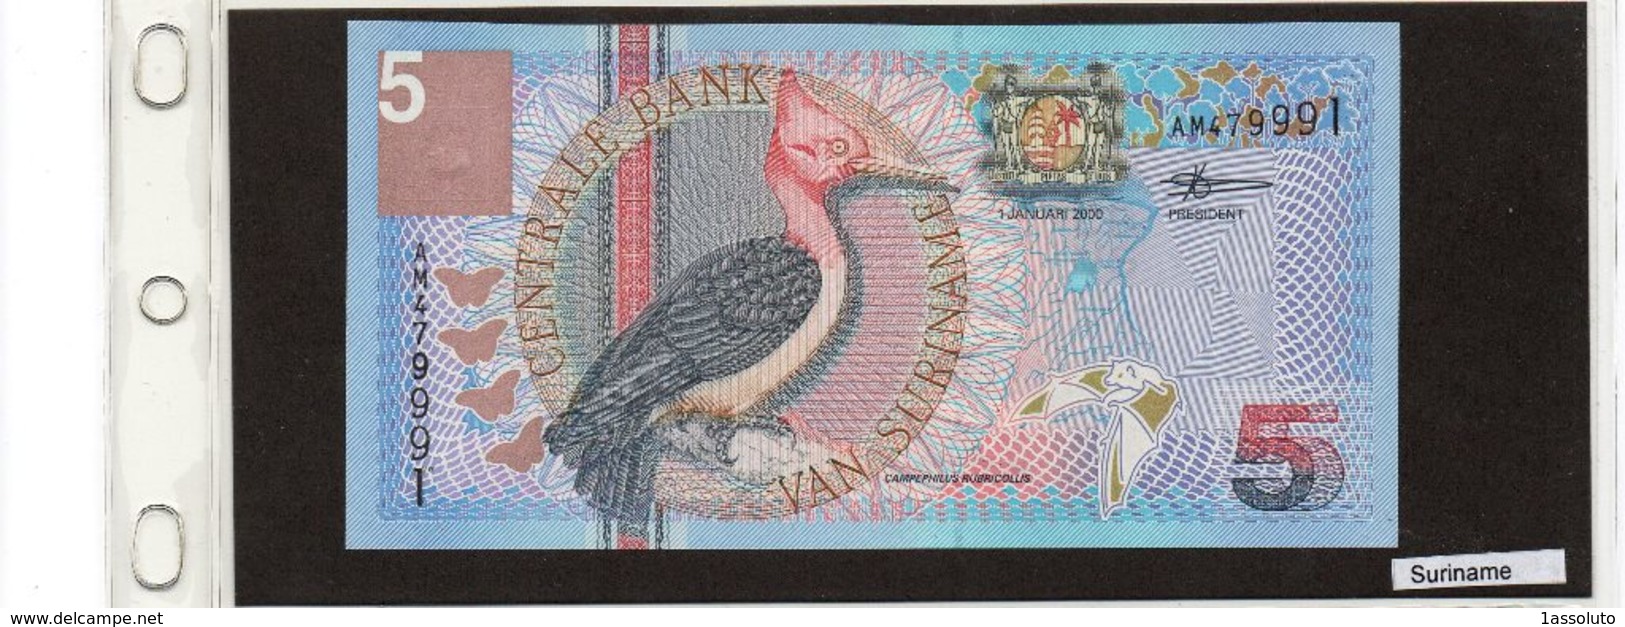 Banconota Suriname 5 Vijf Gulden - Suriname